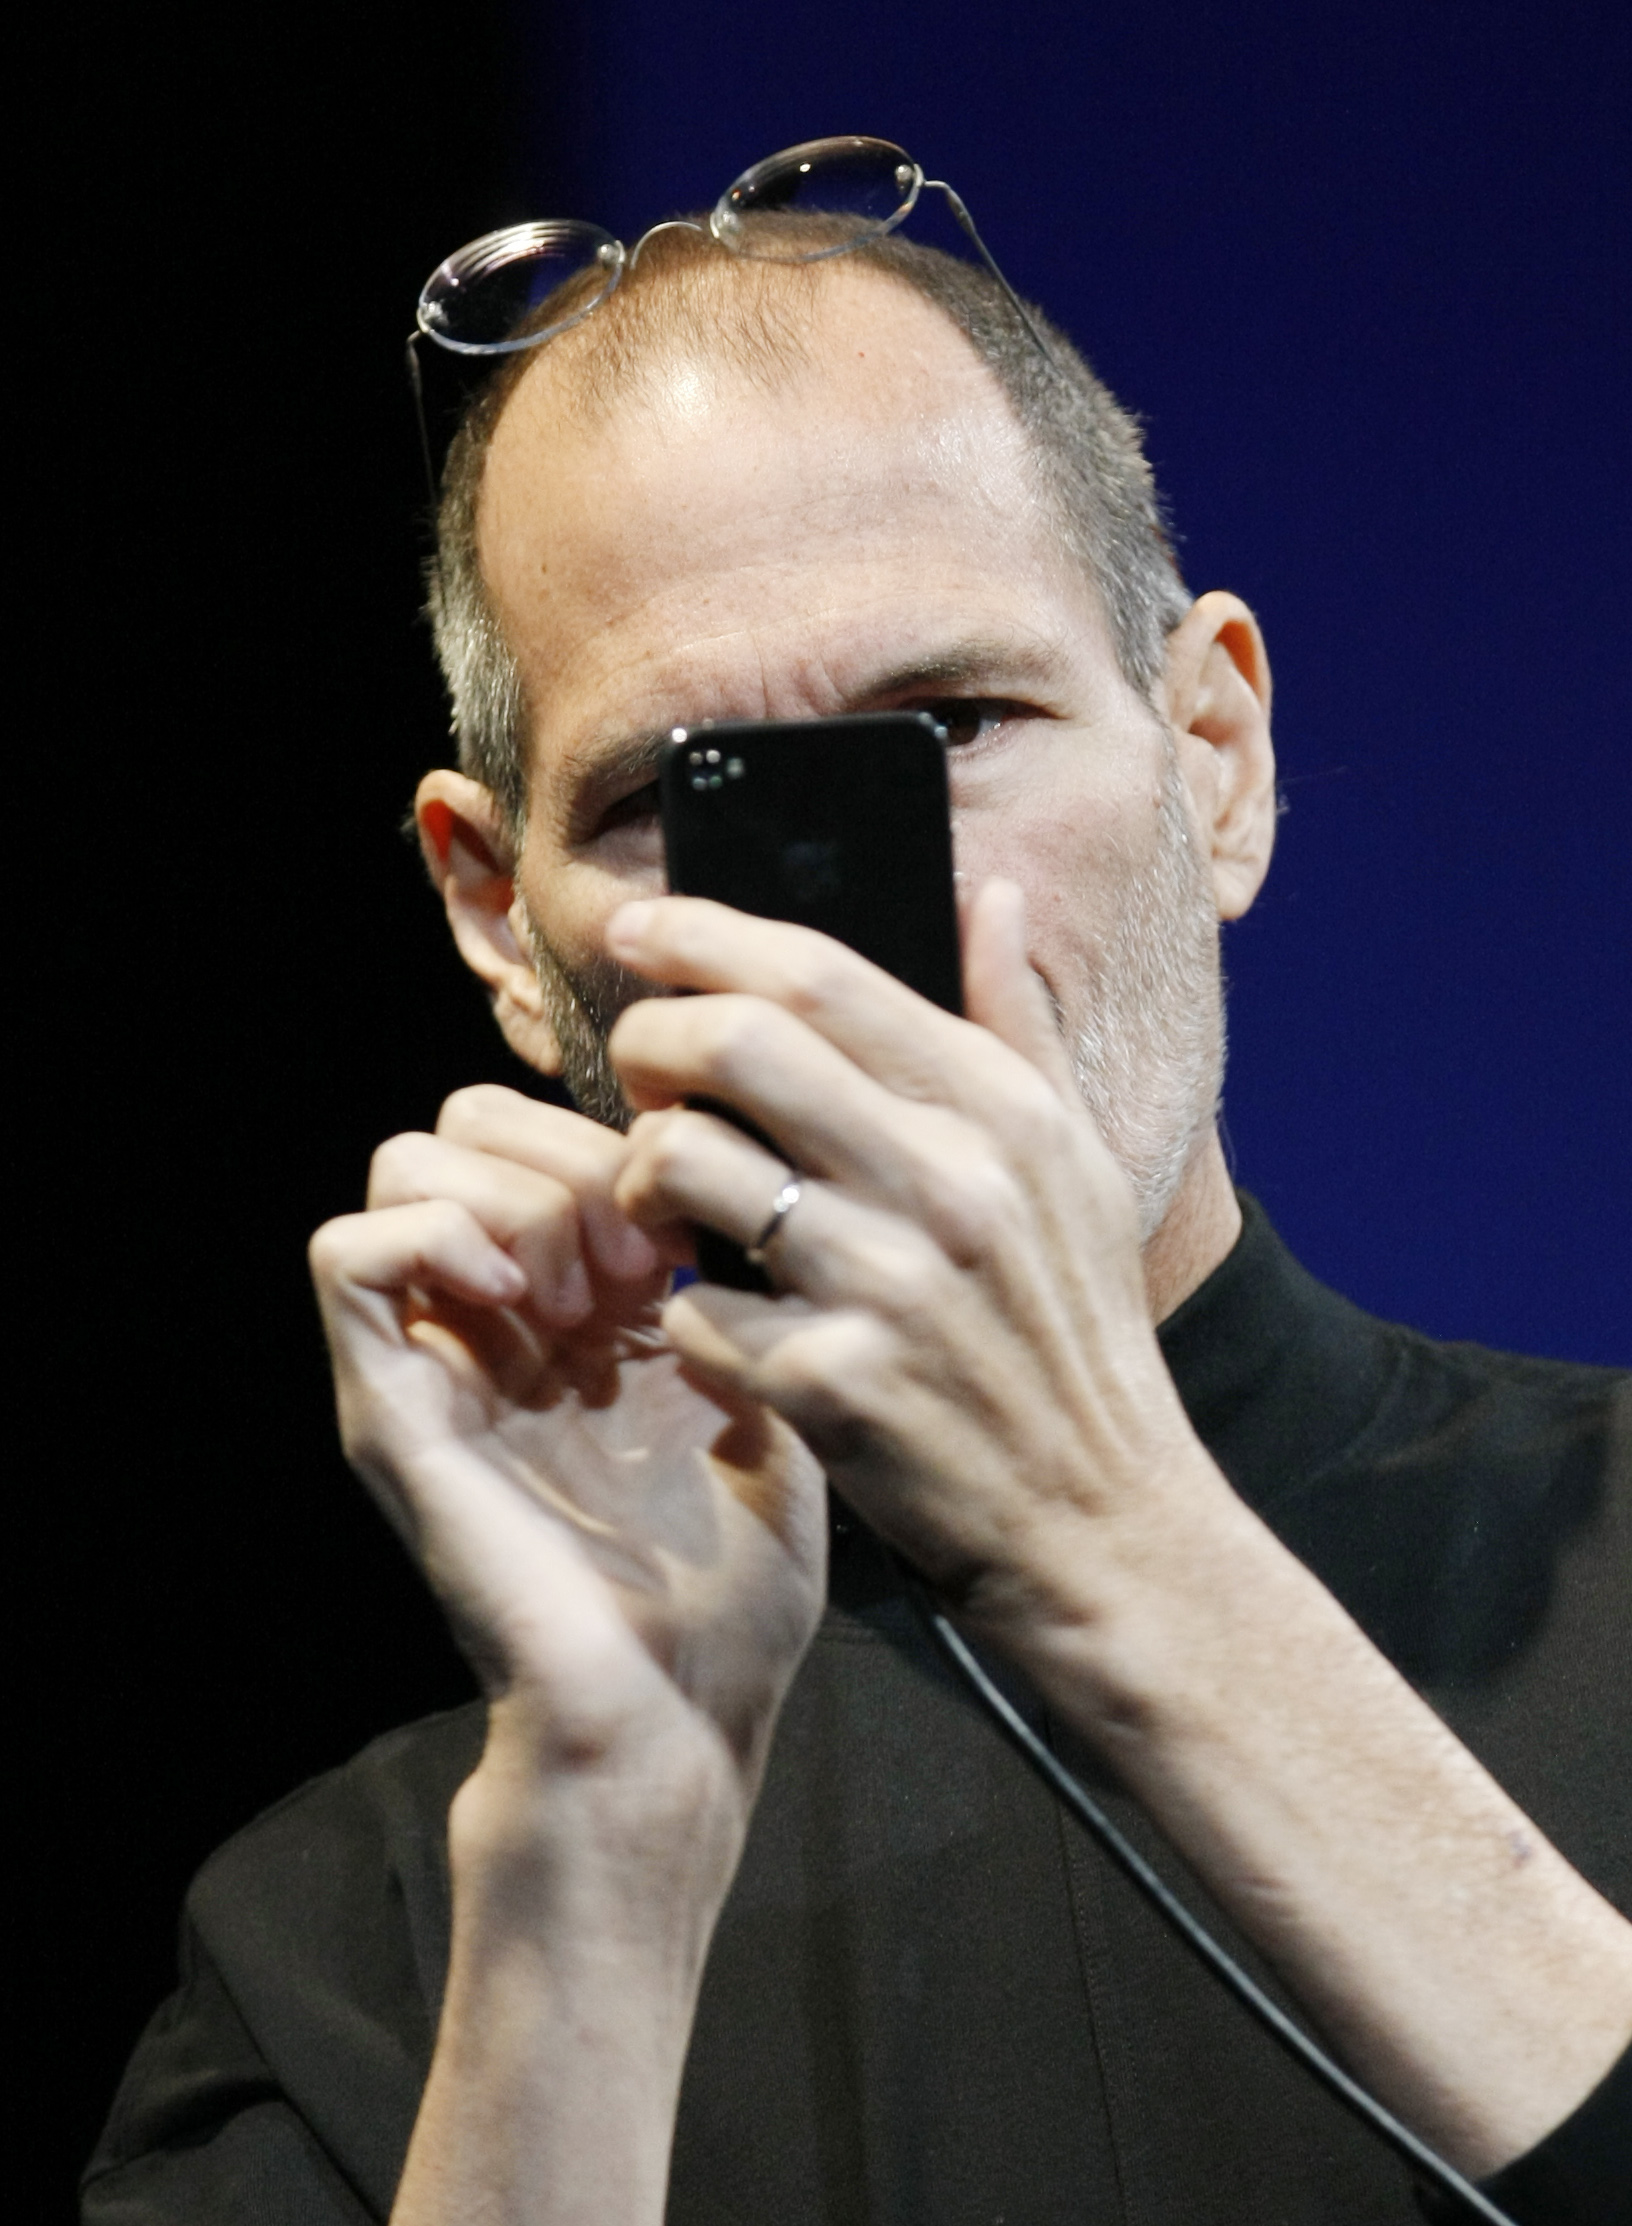 스티브 잡스 애플 최고경영자(CEO)가 7일 미국 샌프란시스코에서 열린 애플 월드와이드 개발자 콘퍼런스(WWDC)에서 아이폰4를 사용하고 있다. AP=연합뉴스